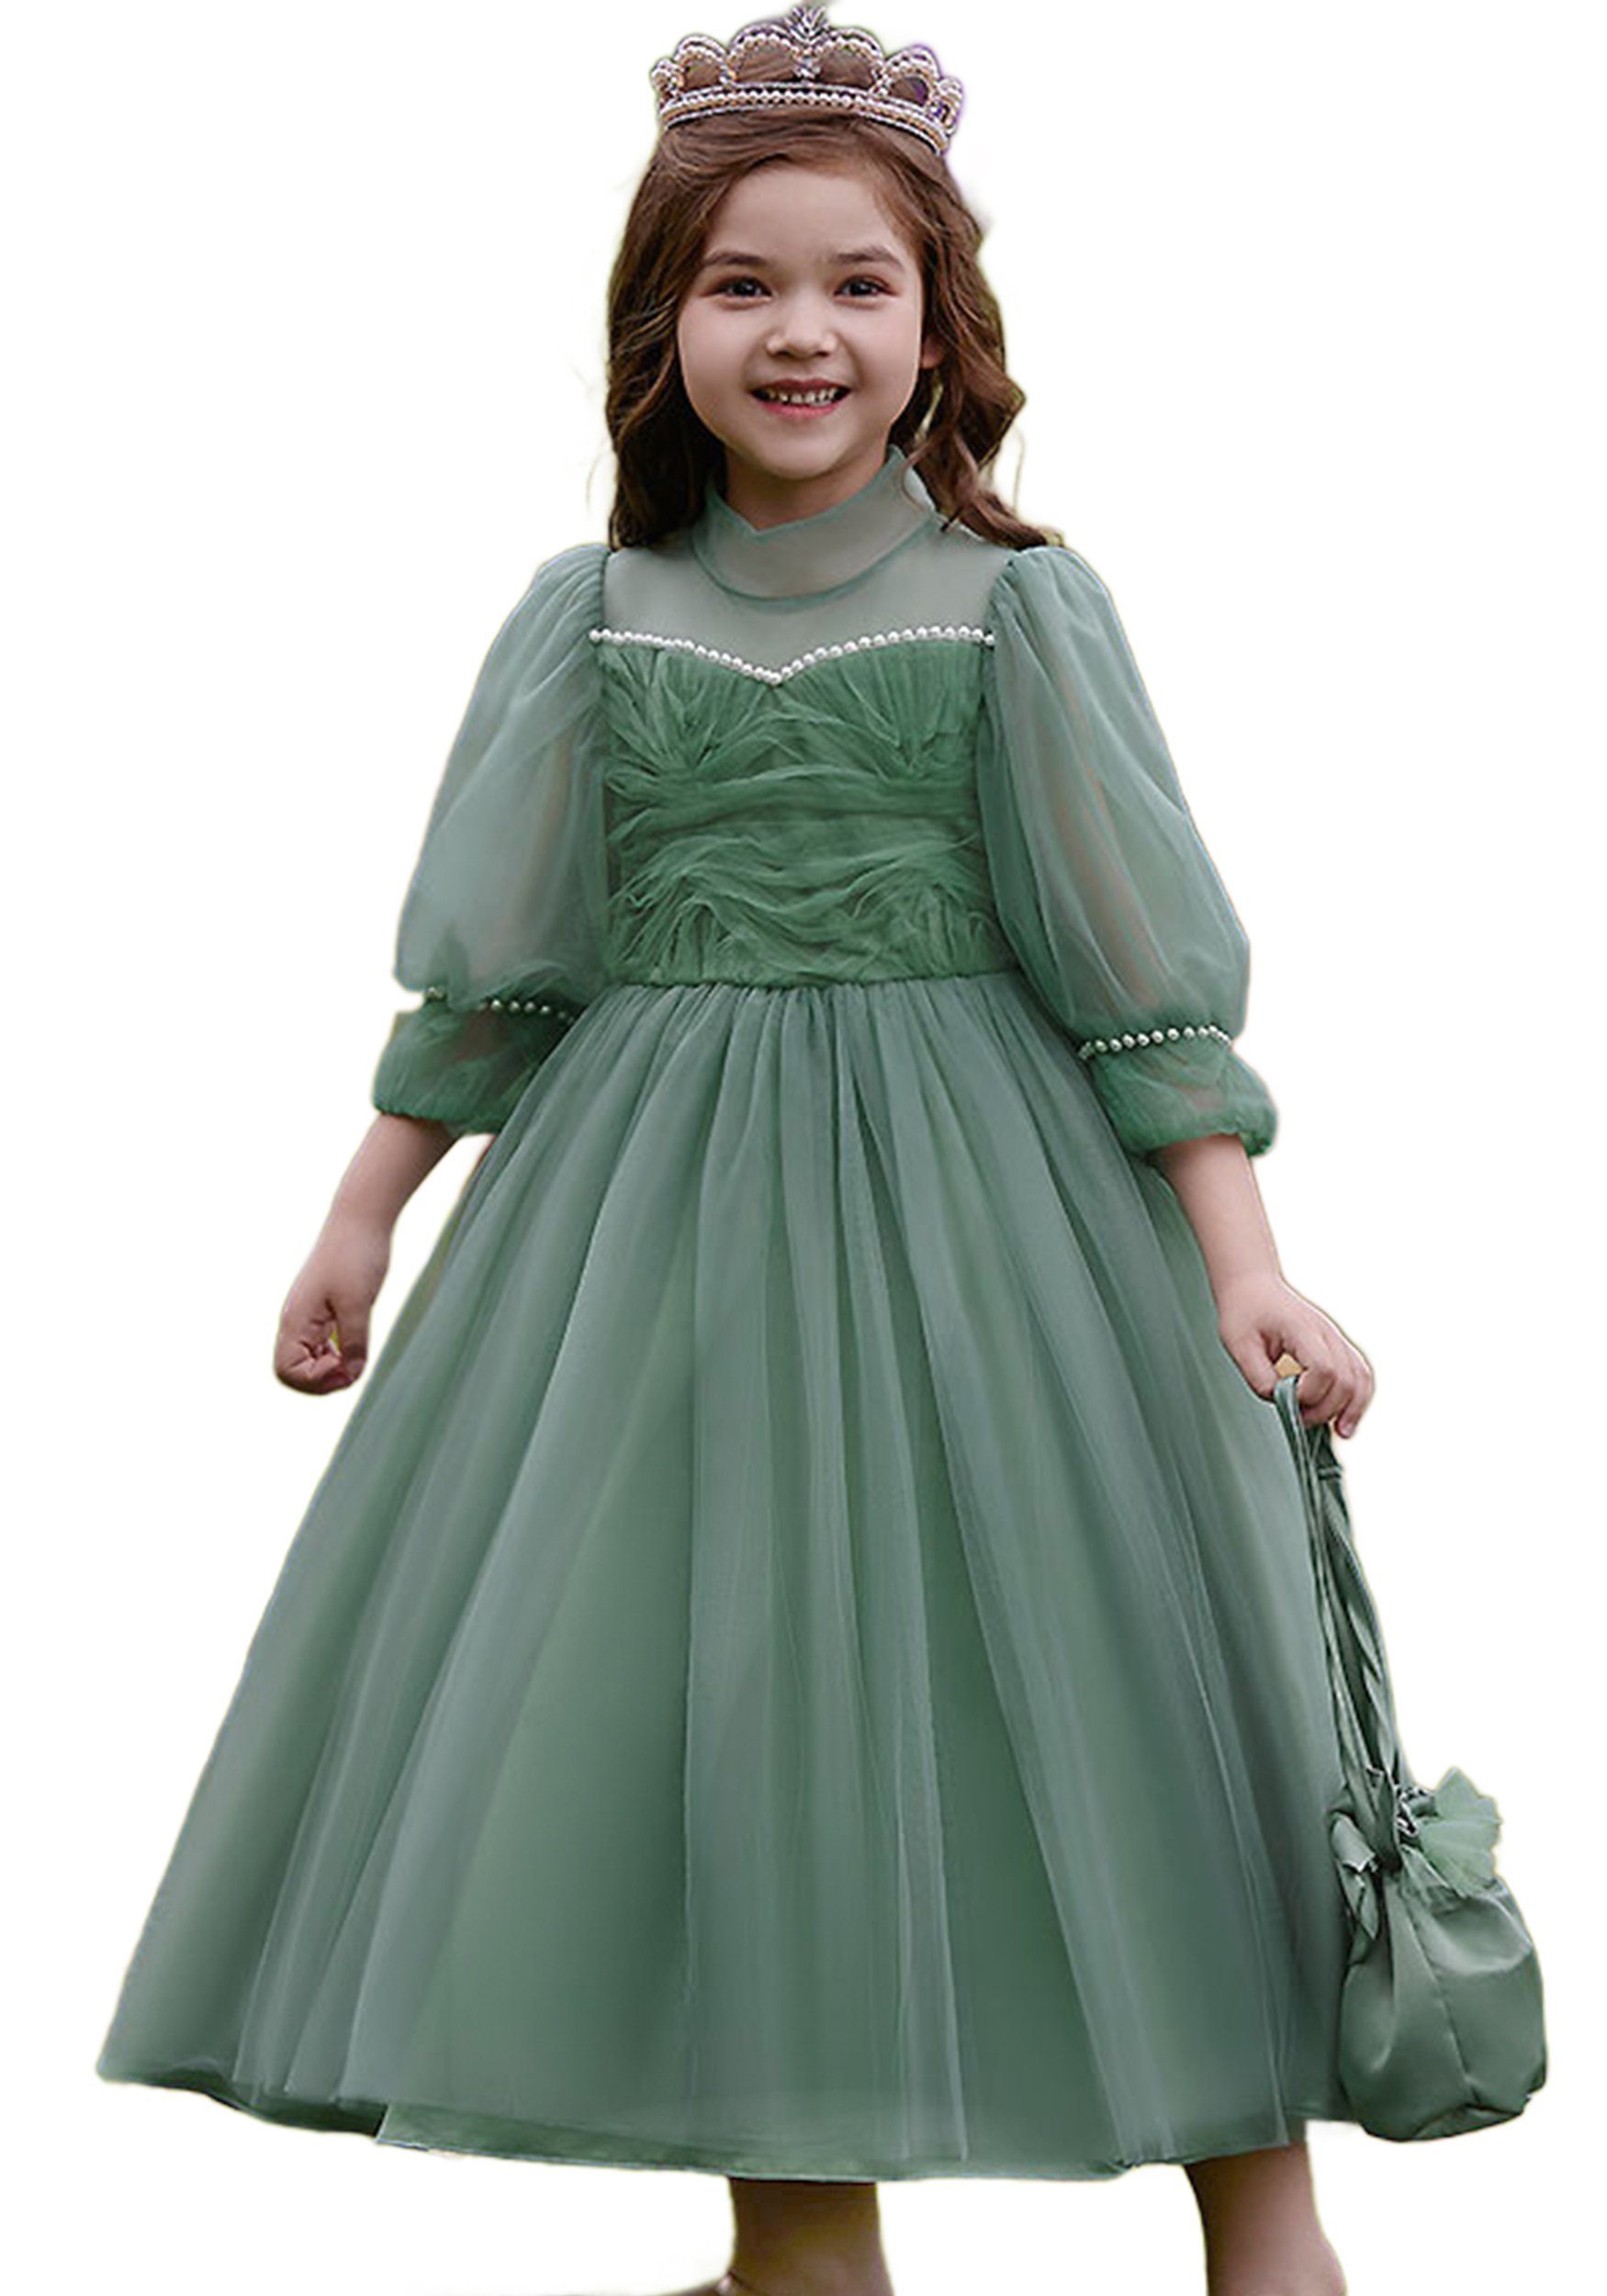 Daisred Tüllkleid Blumenmädchenkleid Grün Prinzessinnenkleid Geburtstagsparty